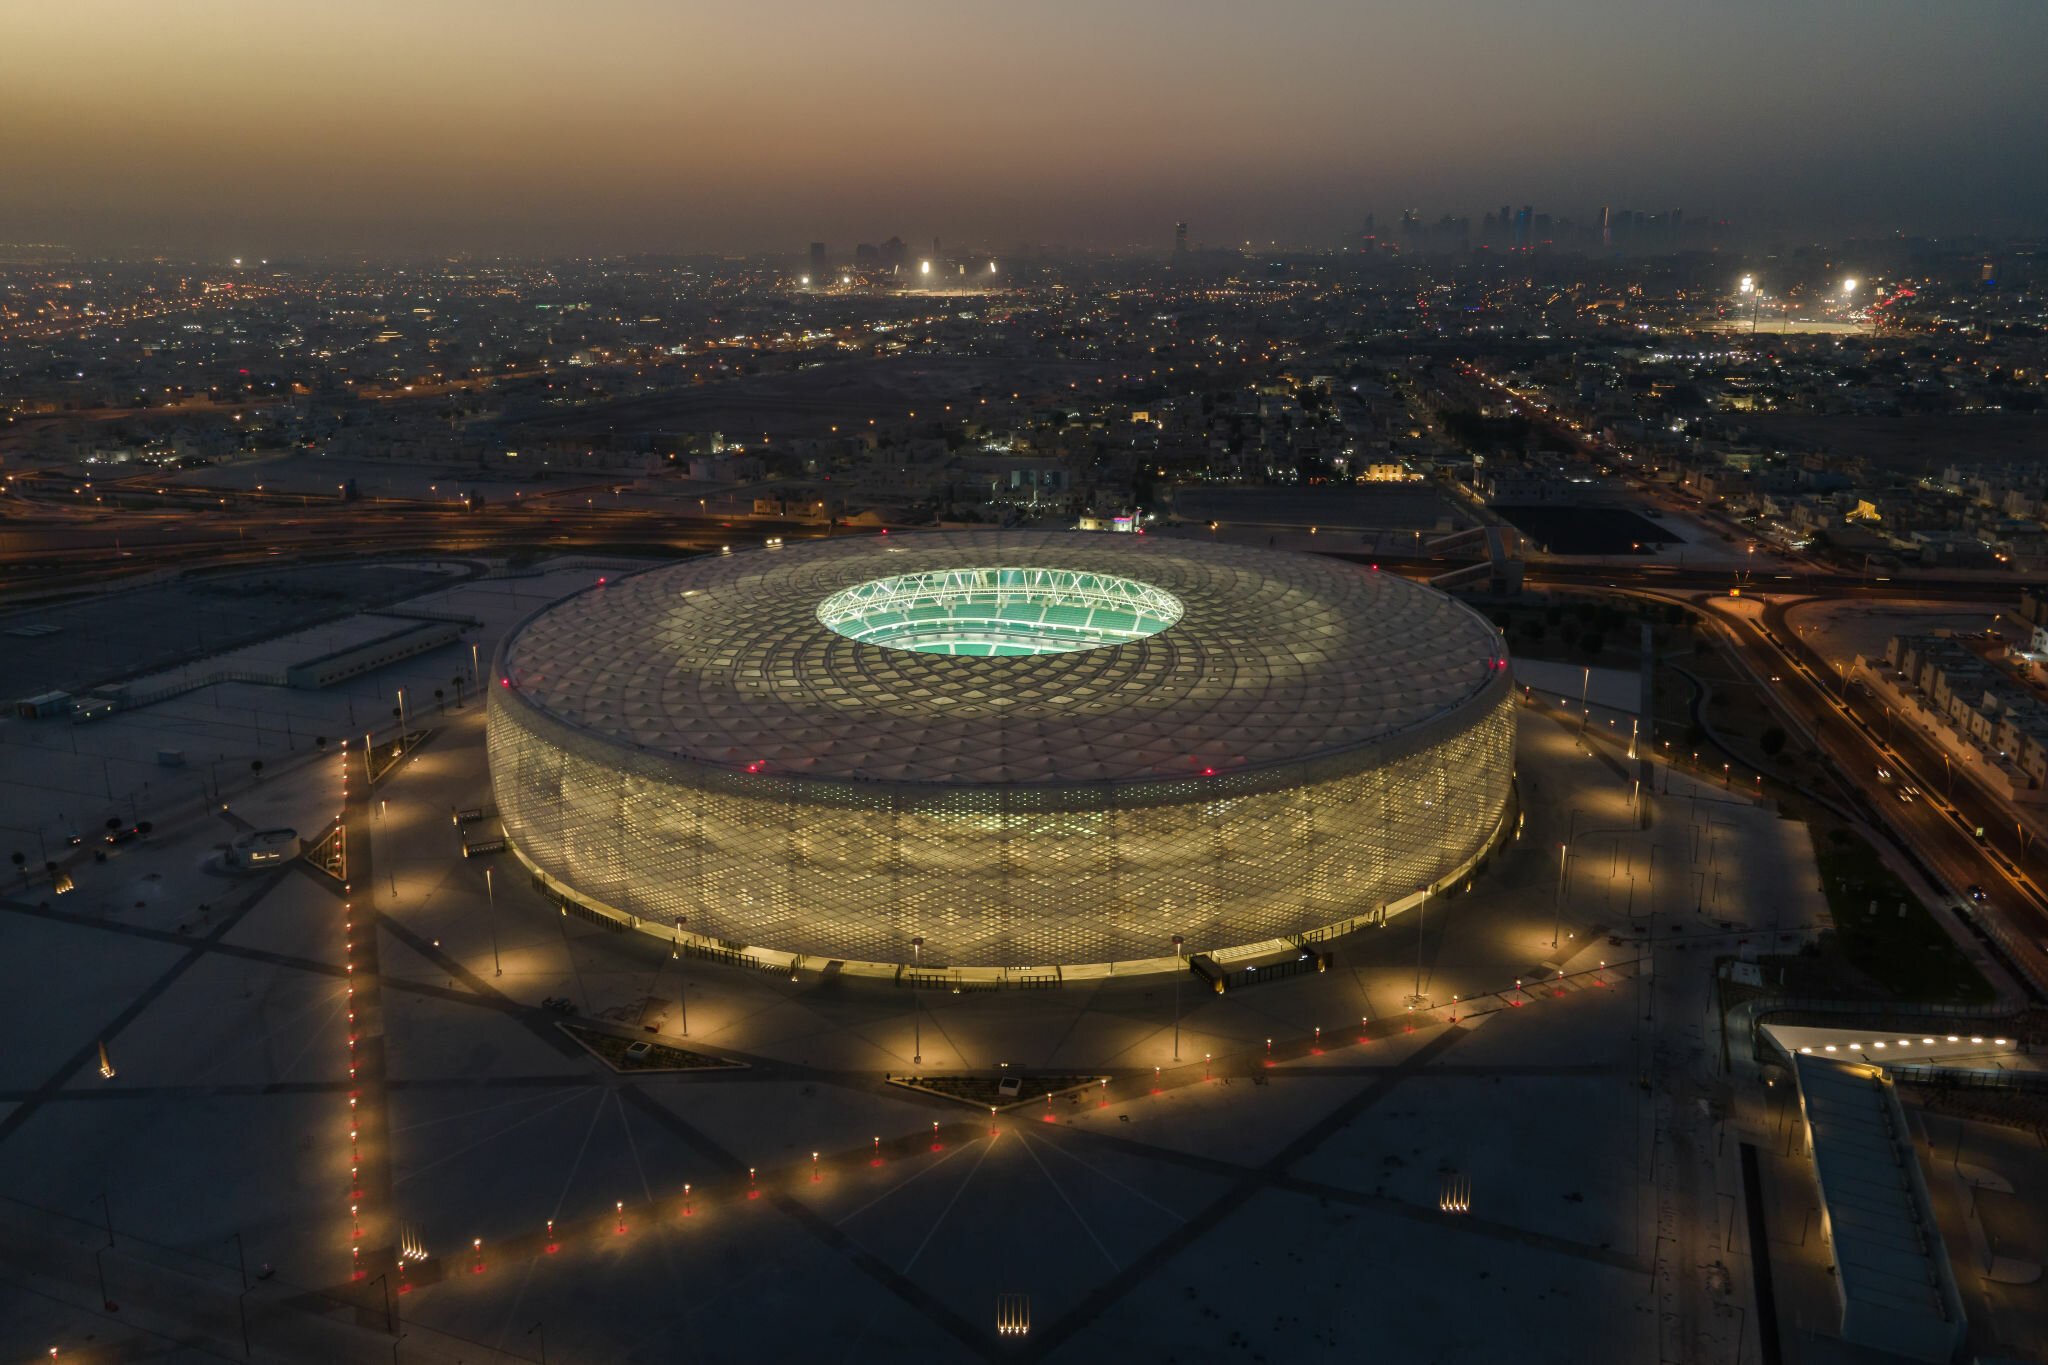 Nhìn từ trên cao, sân vận động khá giống với sân Allianz Arena nổi tiếng của CLB Bayern Munich bởi hình dáng giống chiếc lốp xe. Thực tế, Al Thumama được thiết kế dựa trên cảm hứng từ chiếc mũ taqiyah - mũ truyền thống của người Trung Đông. (Ảnh: Getty)